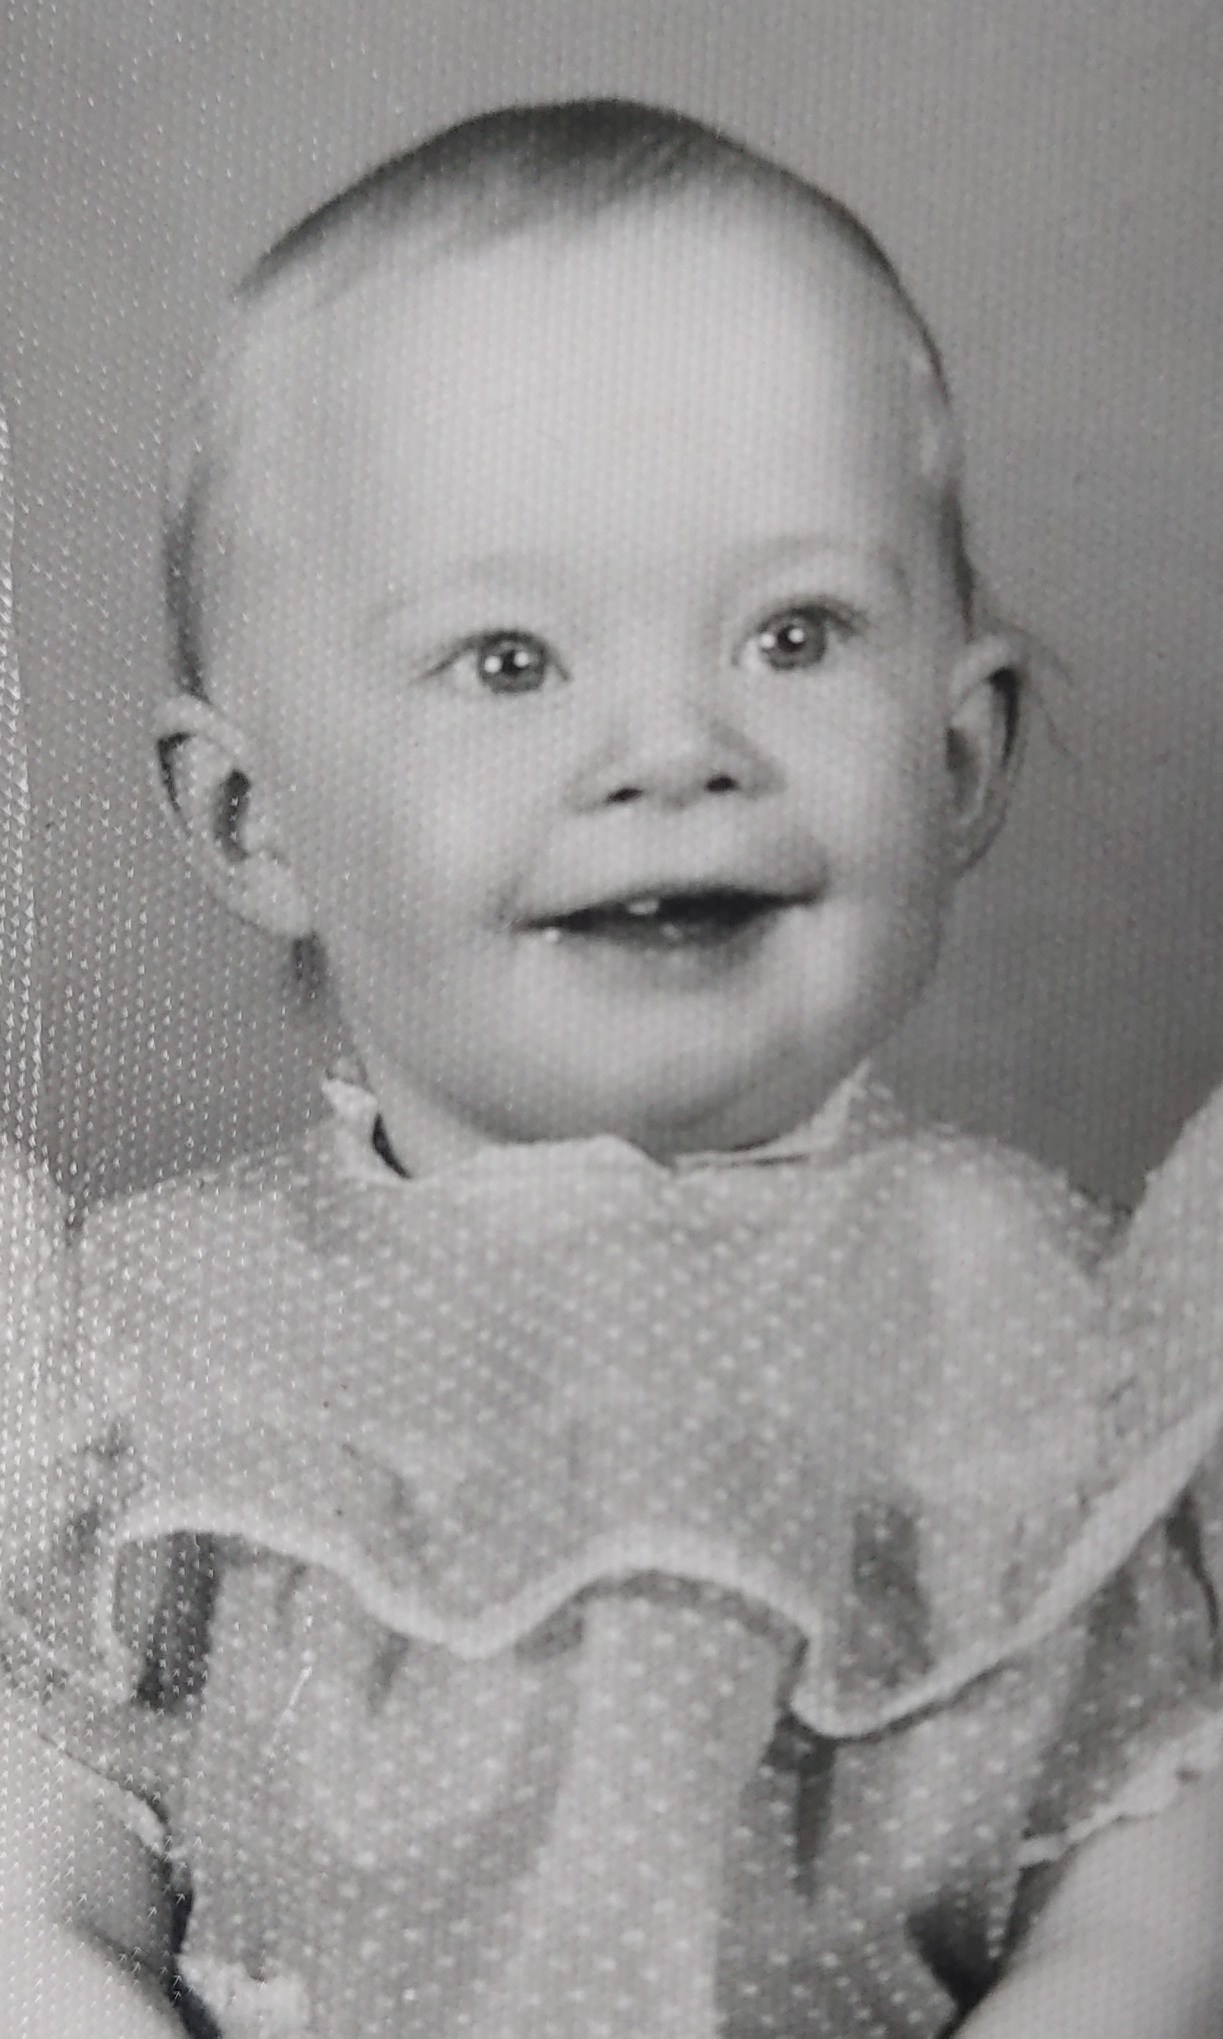 grandma VaVa as a baby